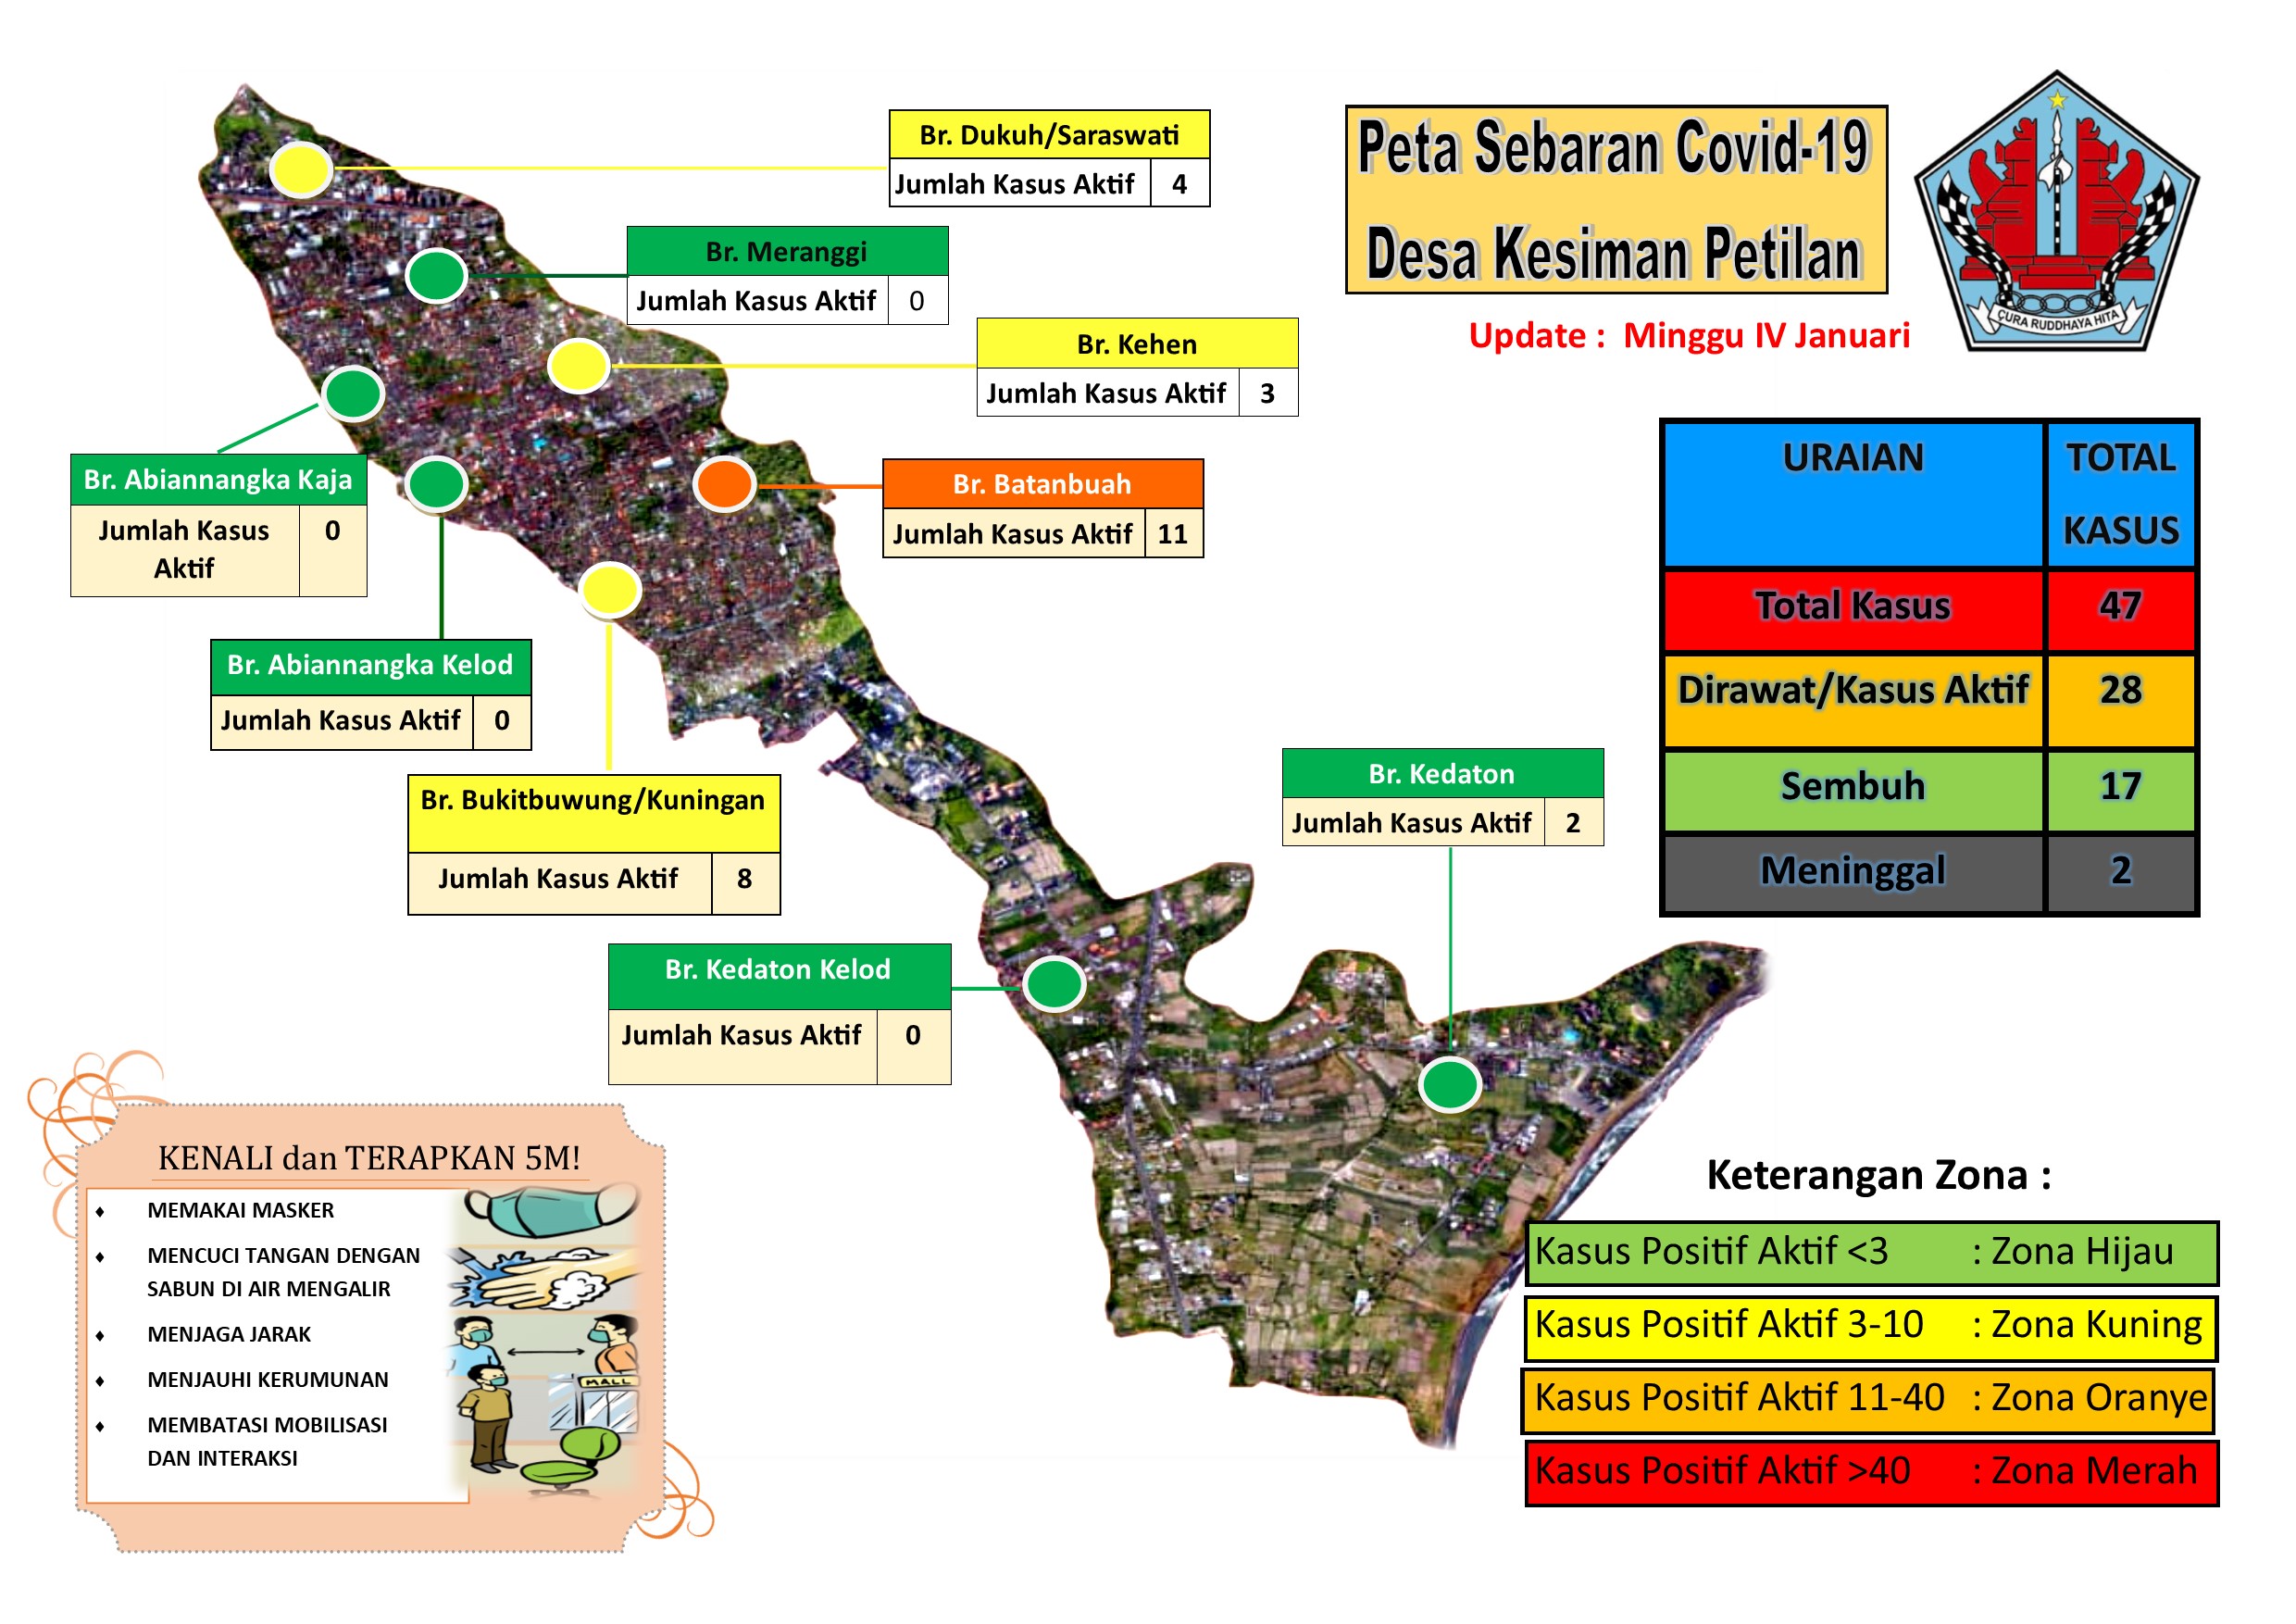 Peta Sebaran Covid-19 Minggu IV Januari 2021